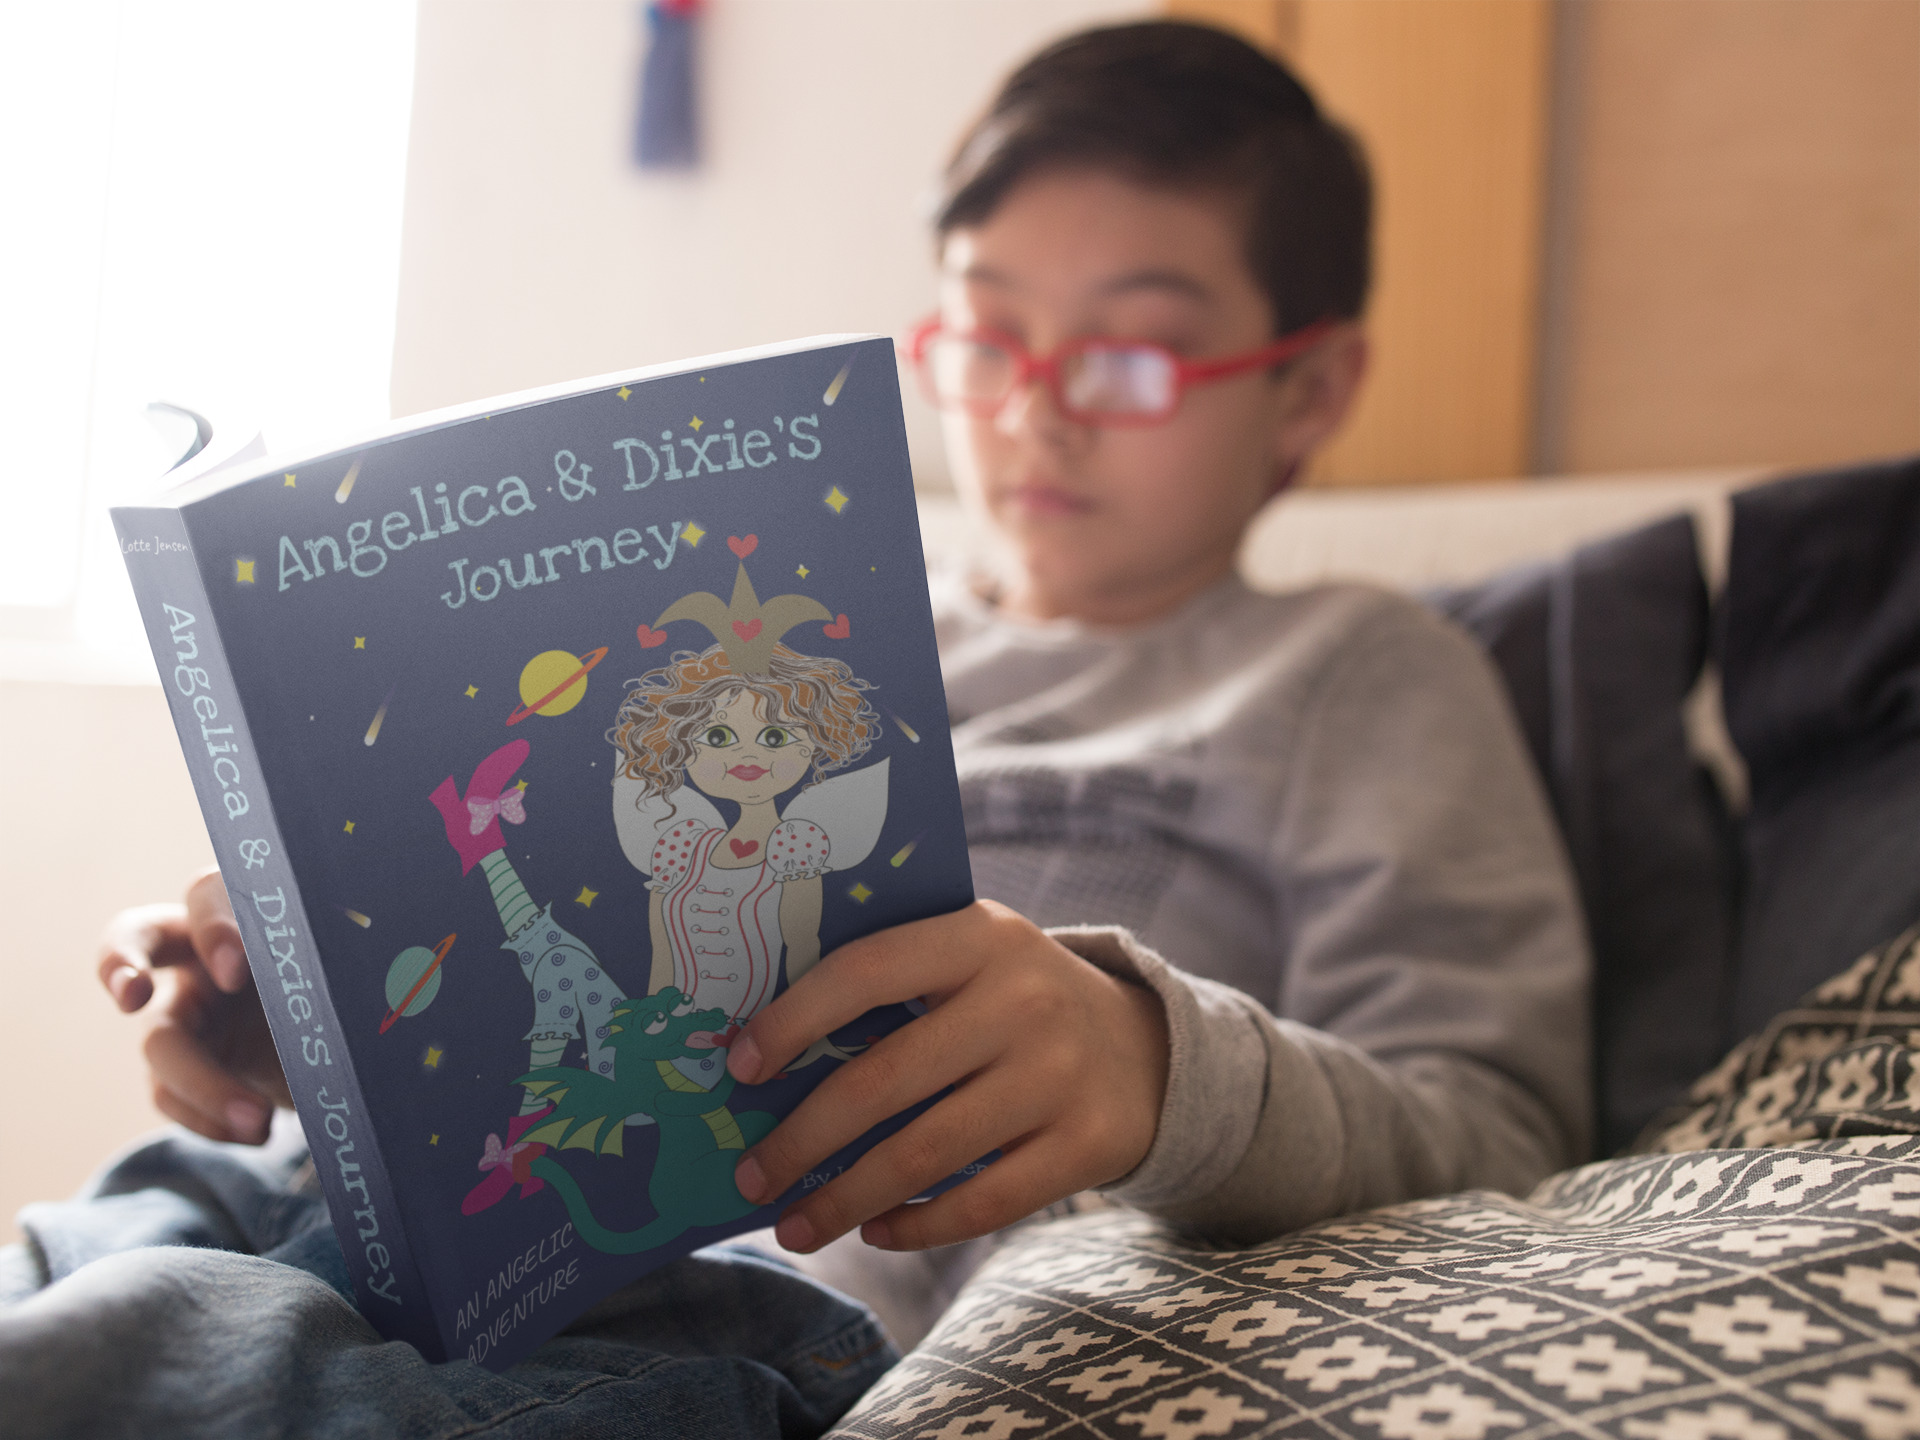 Boy reading Angelica & Dixie